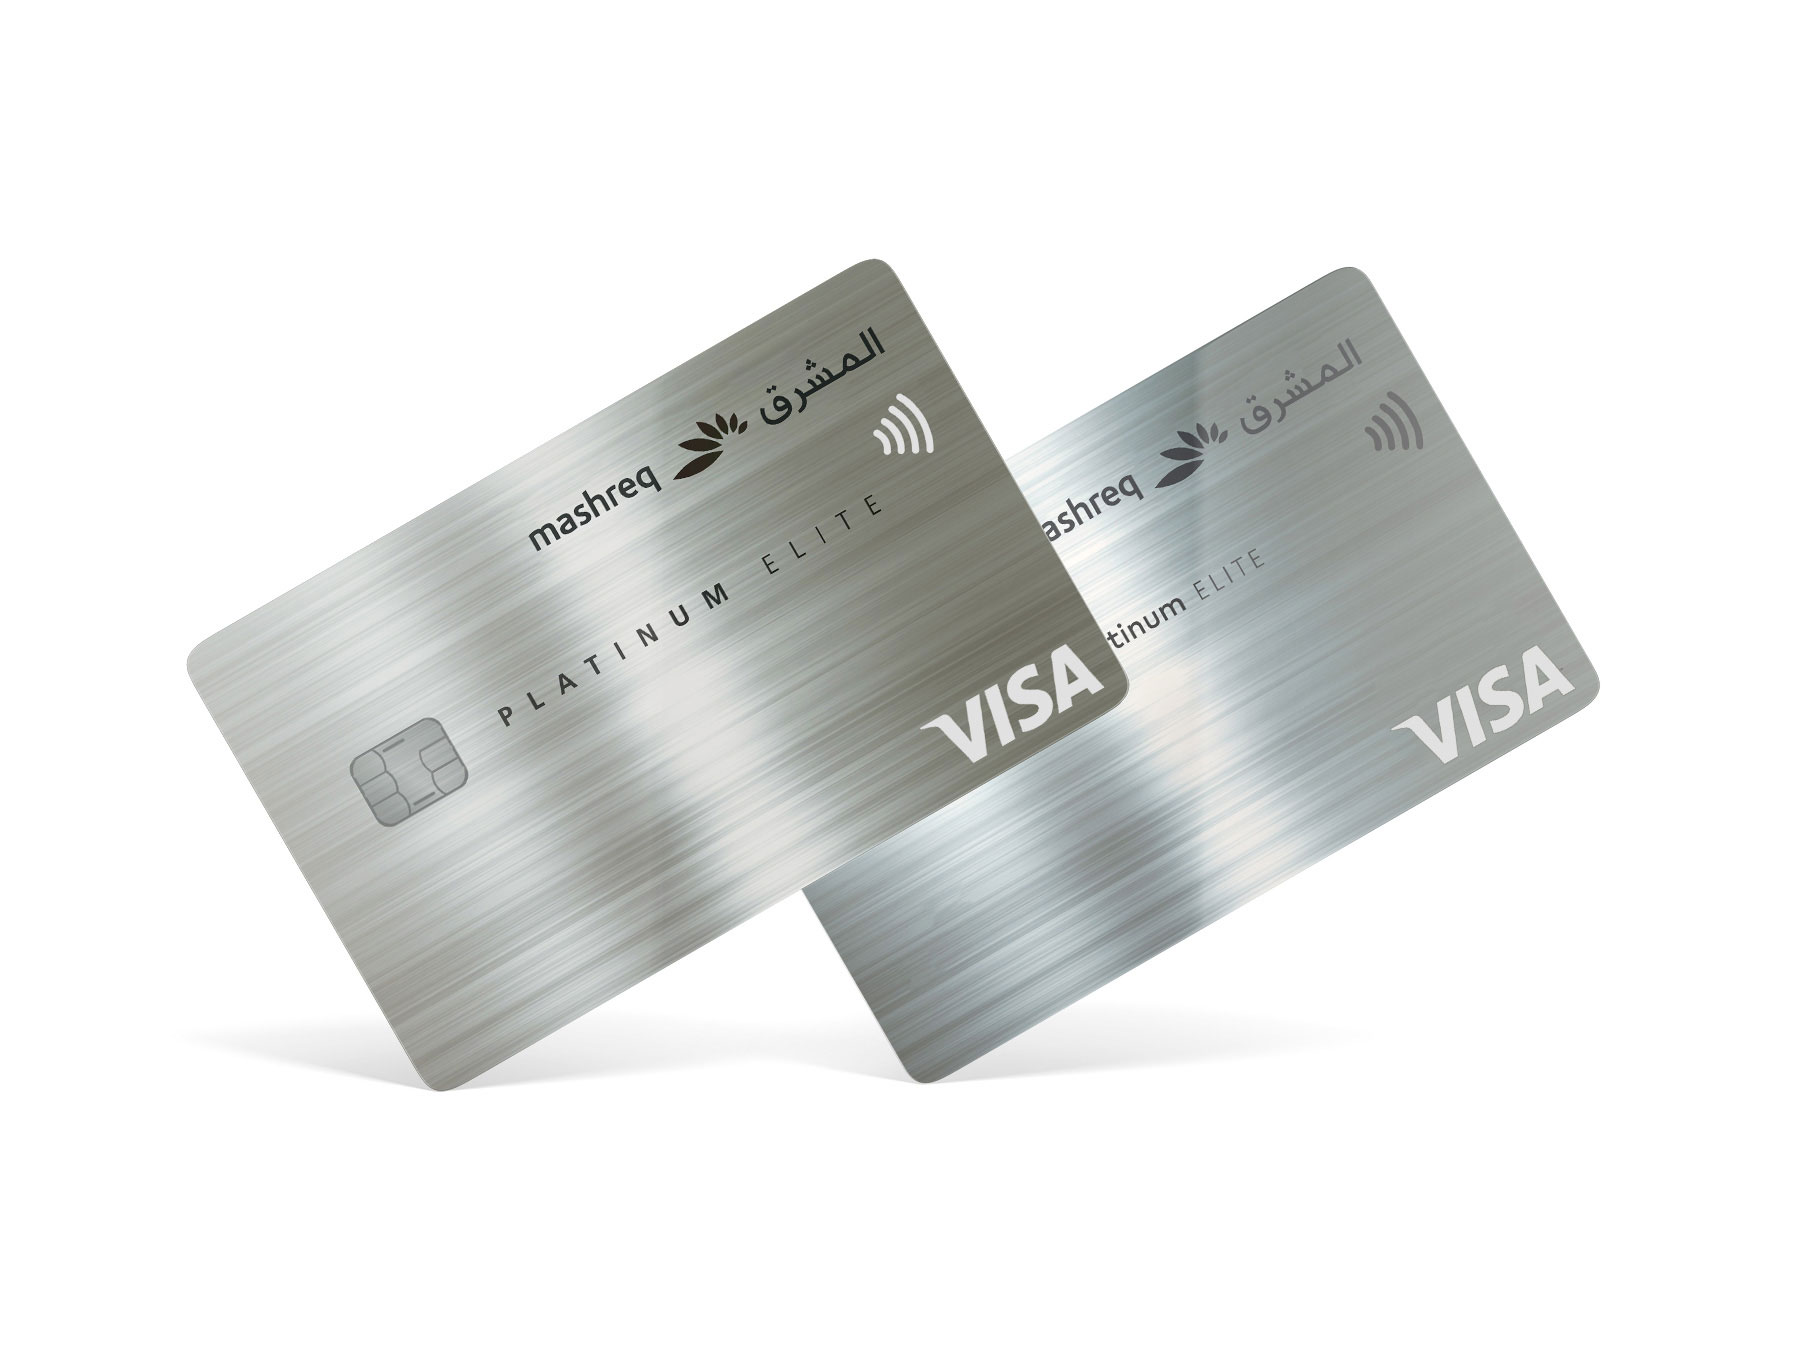 Mashreq platinum elite Credit Card